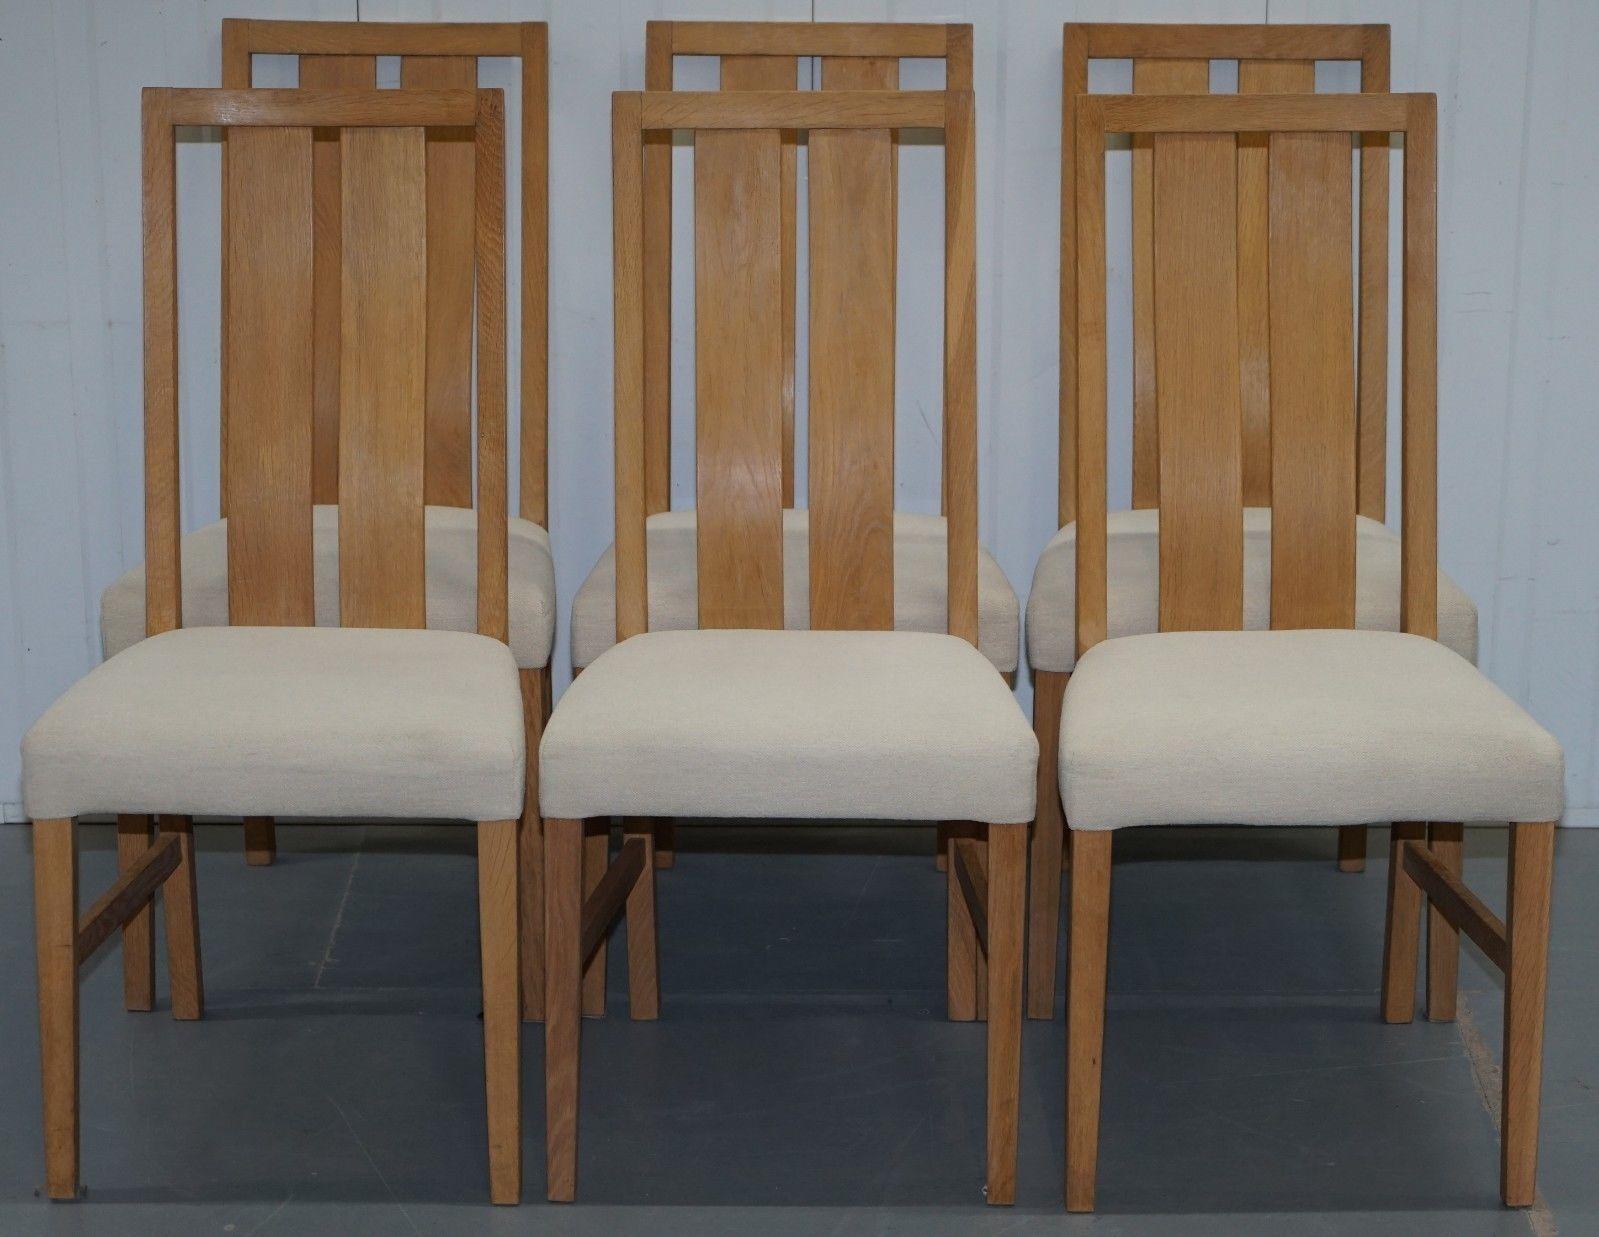 Nous sommes ravis de proposer à la vente ce bel ensemble de chaises de salle à manger originales Orum Mobler en frêne.

Ces chaises font partie d'un ensemble, j'ai la bibliothèque assortie, le buffet et la table à manger à rallonge, j'ai inclus